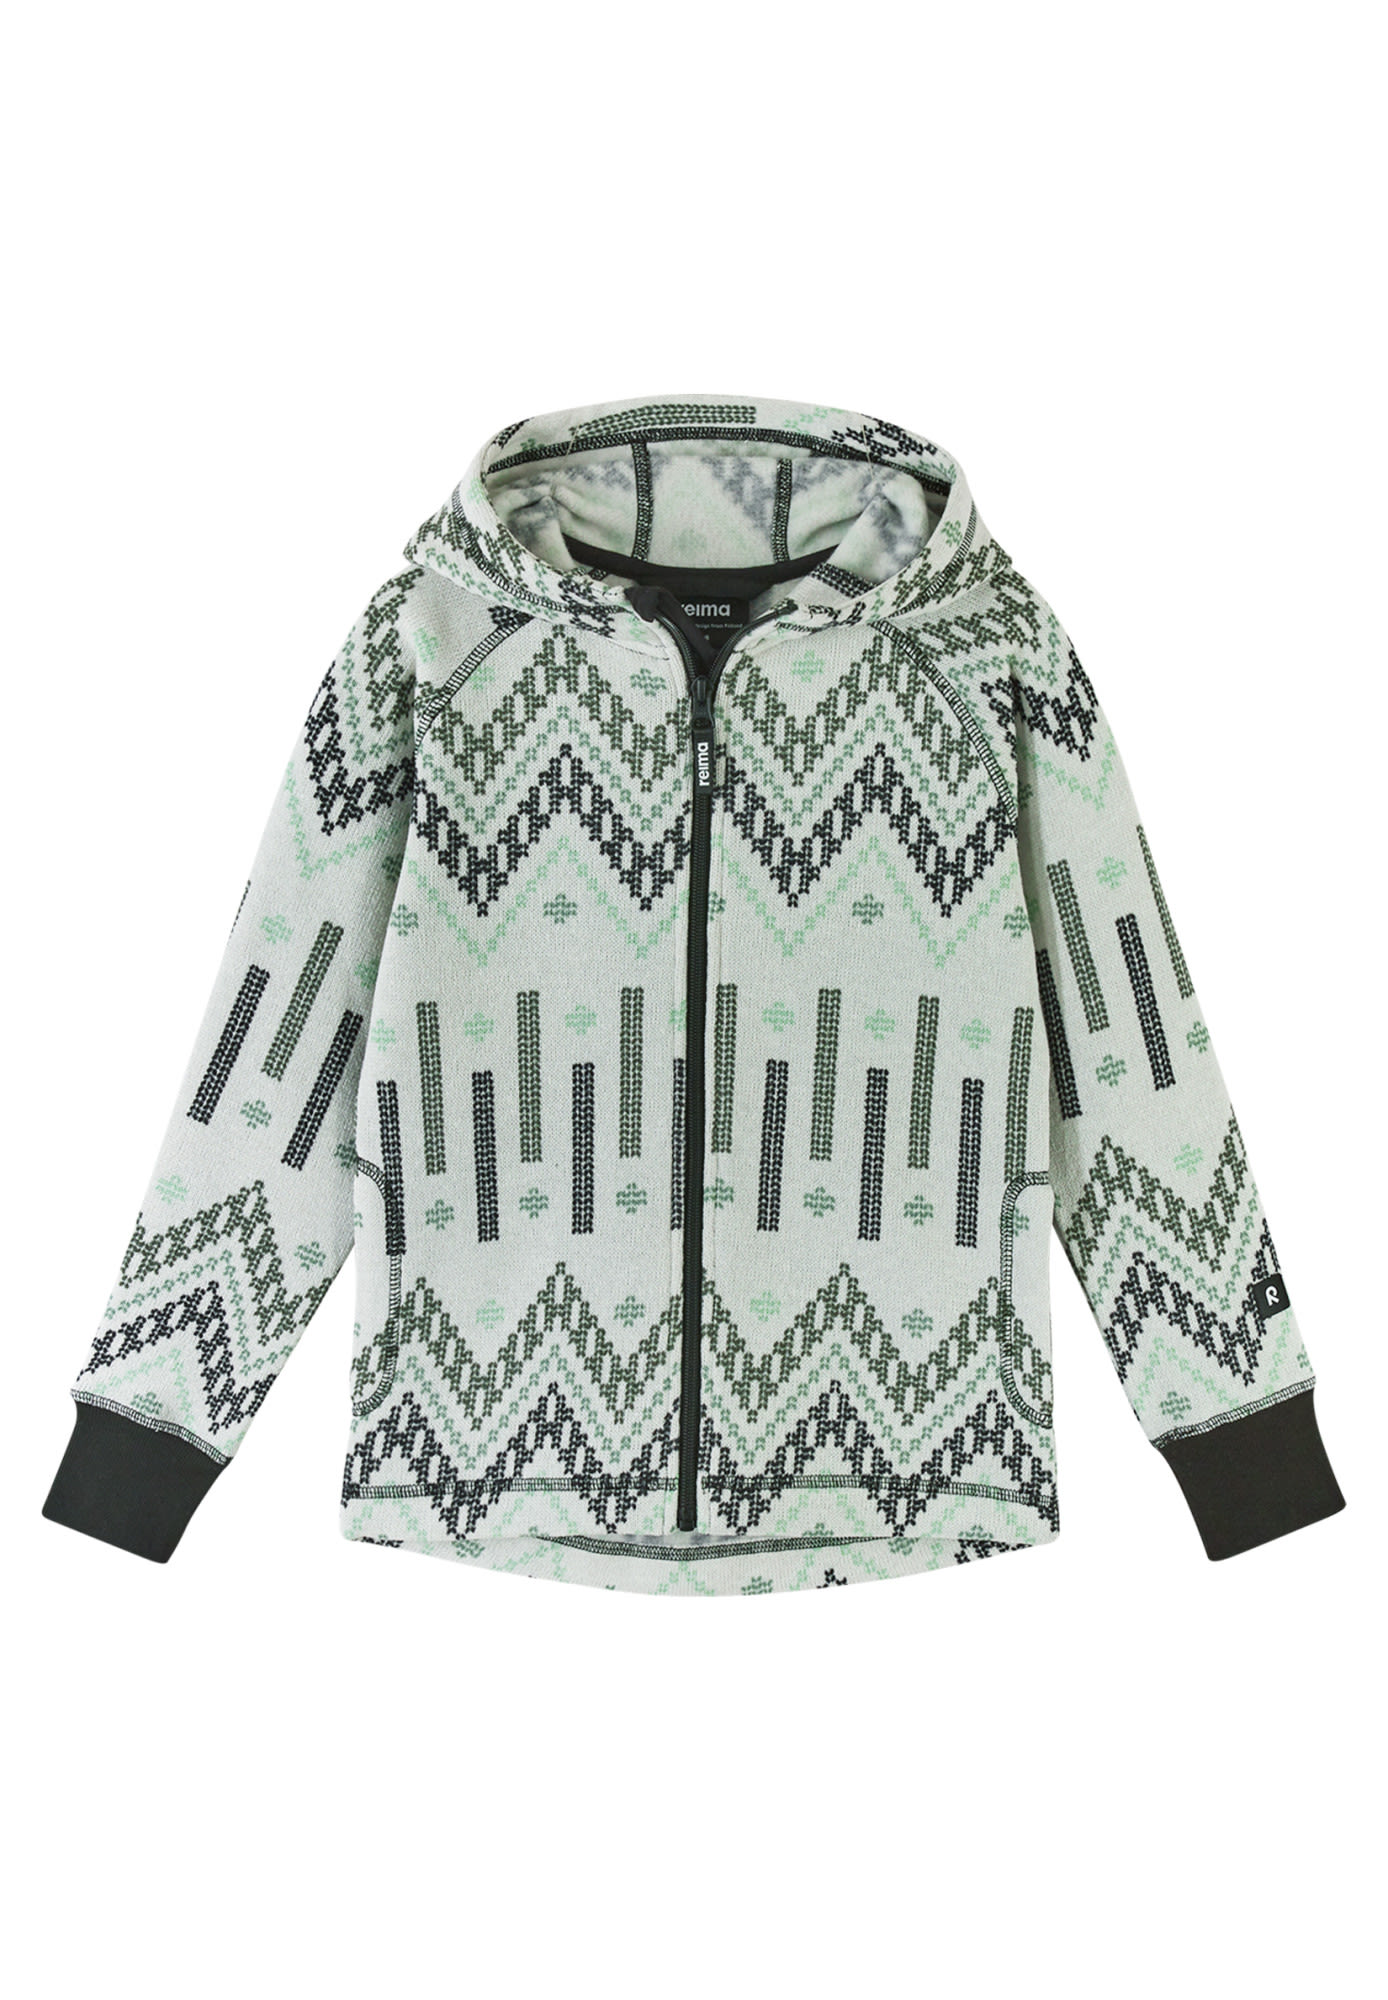 Reima Kids Northern Fleece Sweater Grün / Weiß | Größe 116 | Kinder Anorak